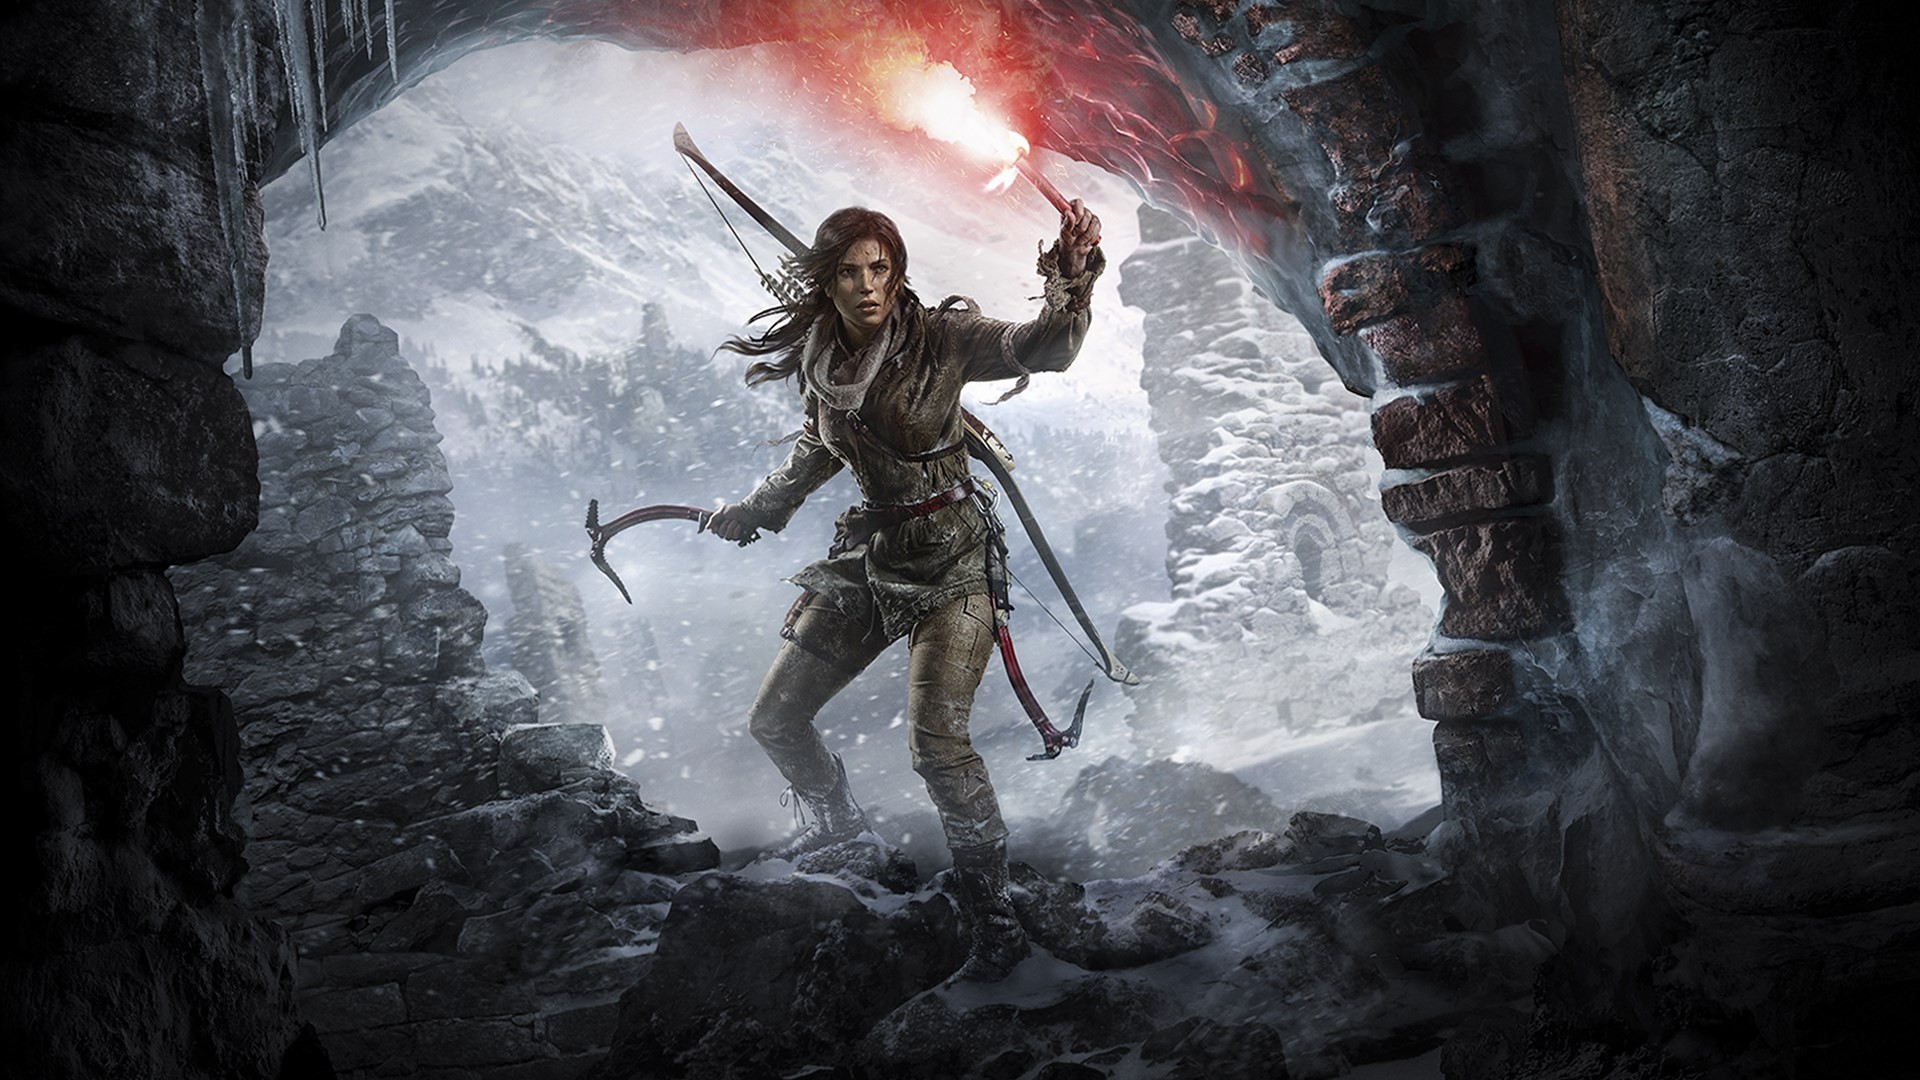 PS Plus traz Rise of the Tomb Raider e NBA 2K20 grátis em julho no PS4